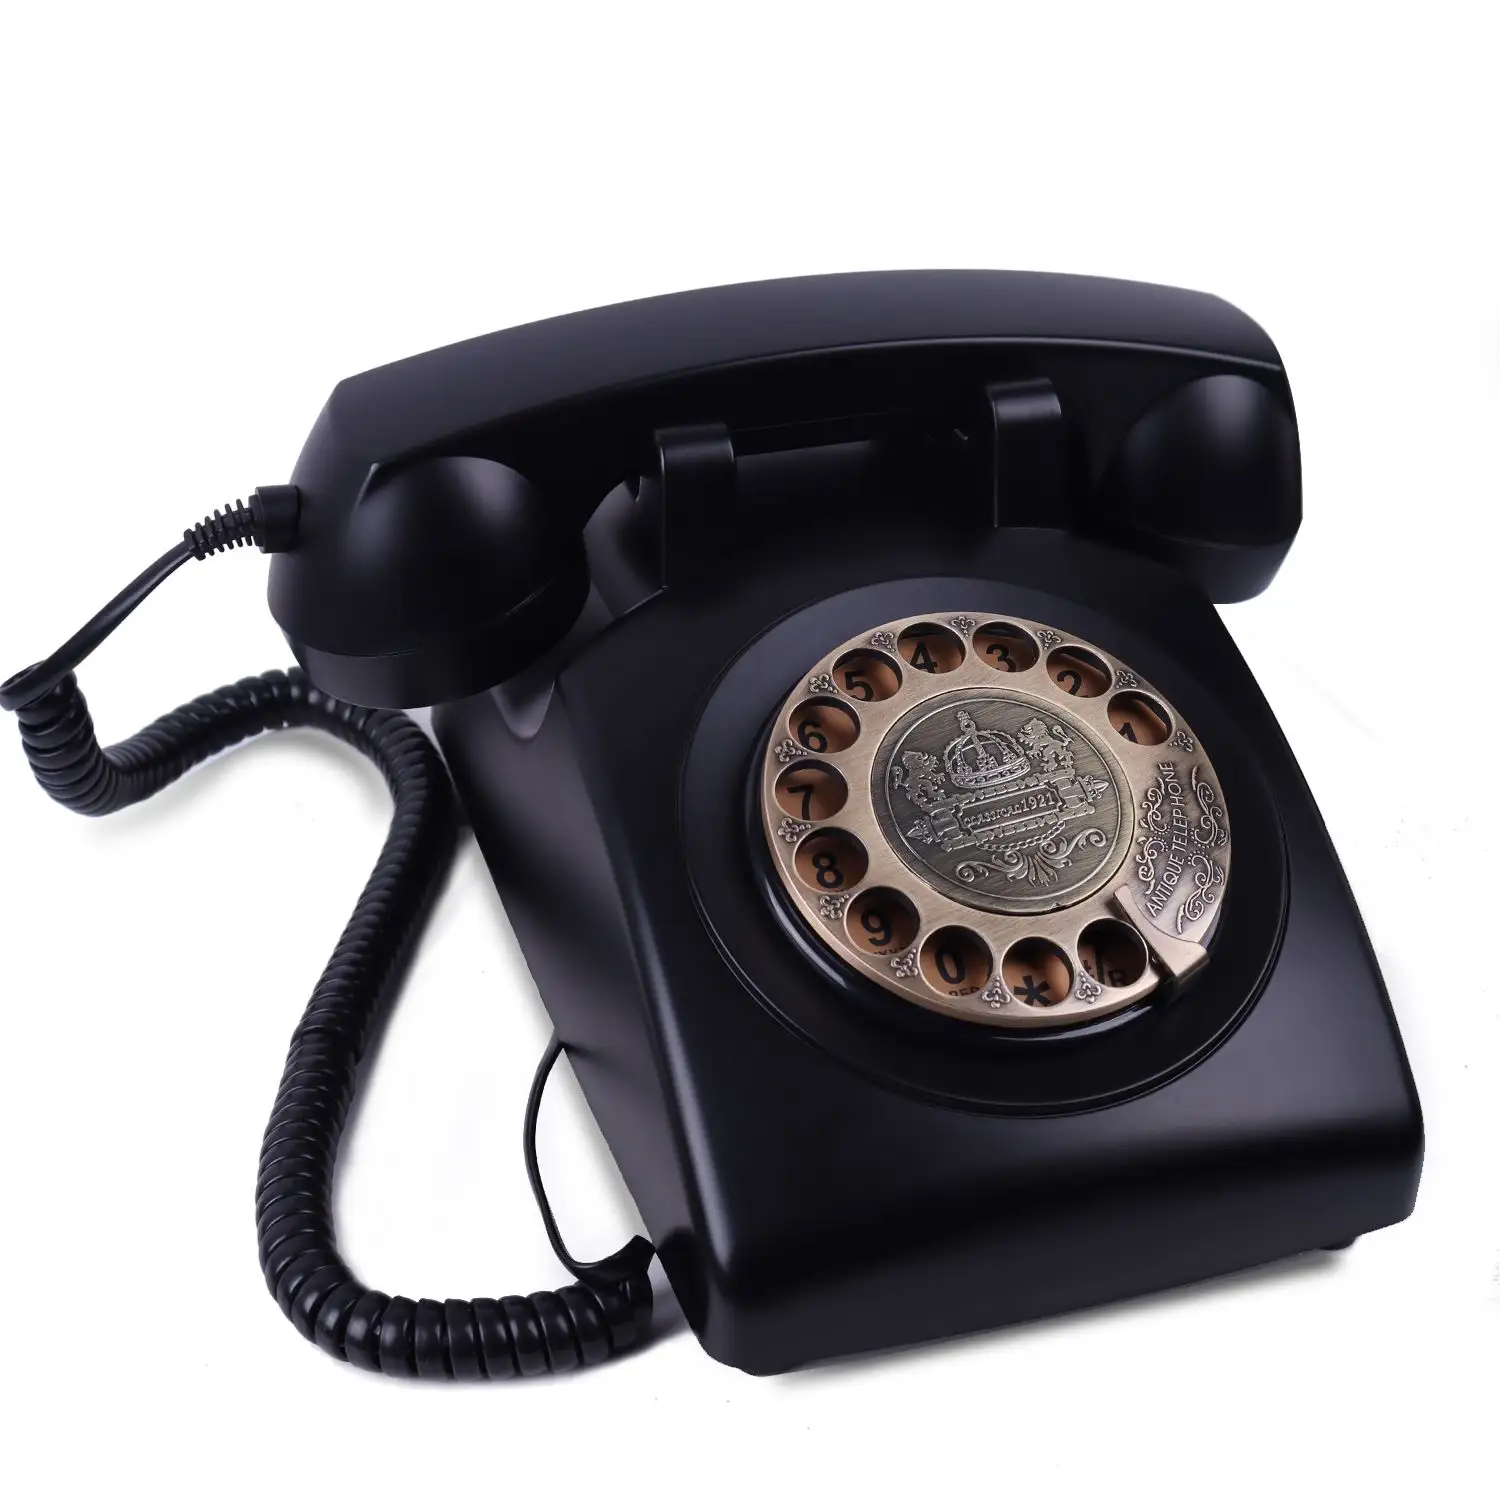 Retro Rotary Wählen Sie Heimtelefone klassisch Schnurtelefon Festnetz Vintage Telefon altmodische elektrische Ausrüstung für Heim büro